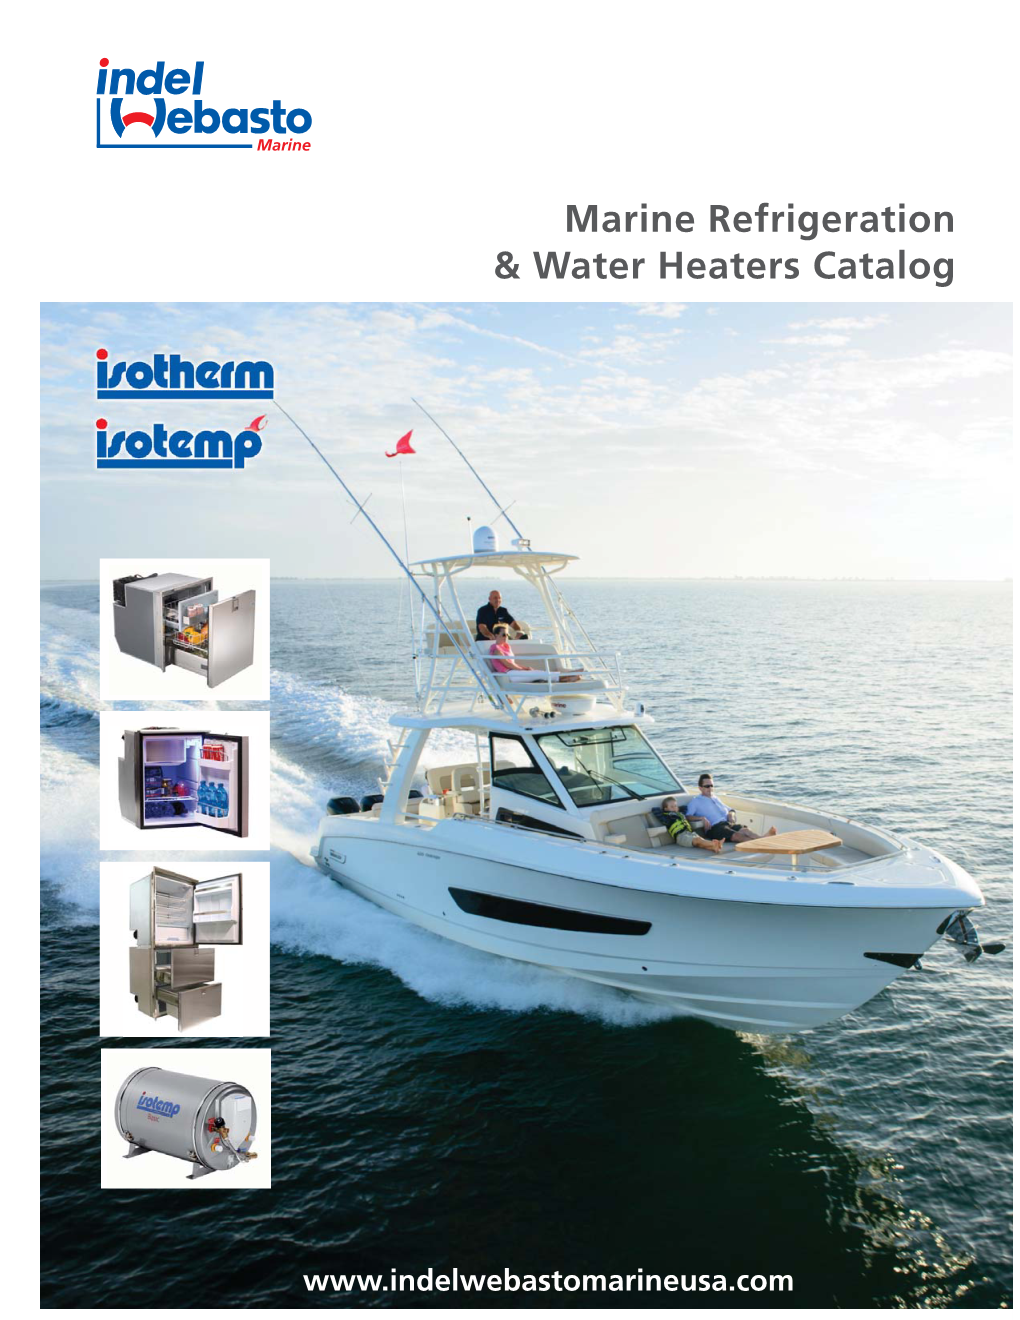 Indel Webasto Marine Catalog